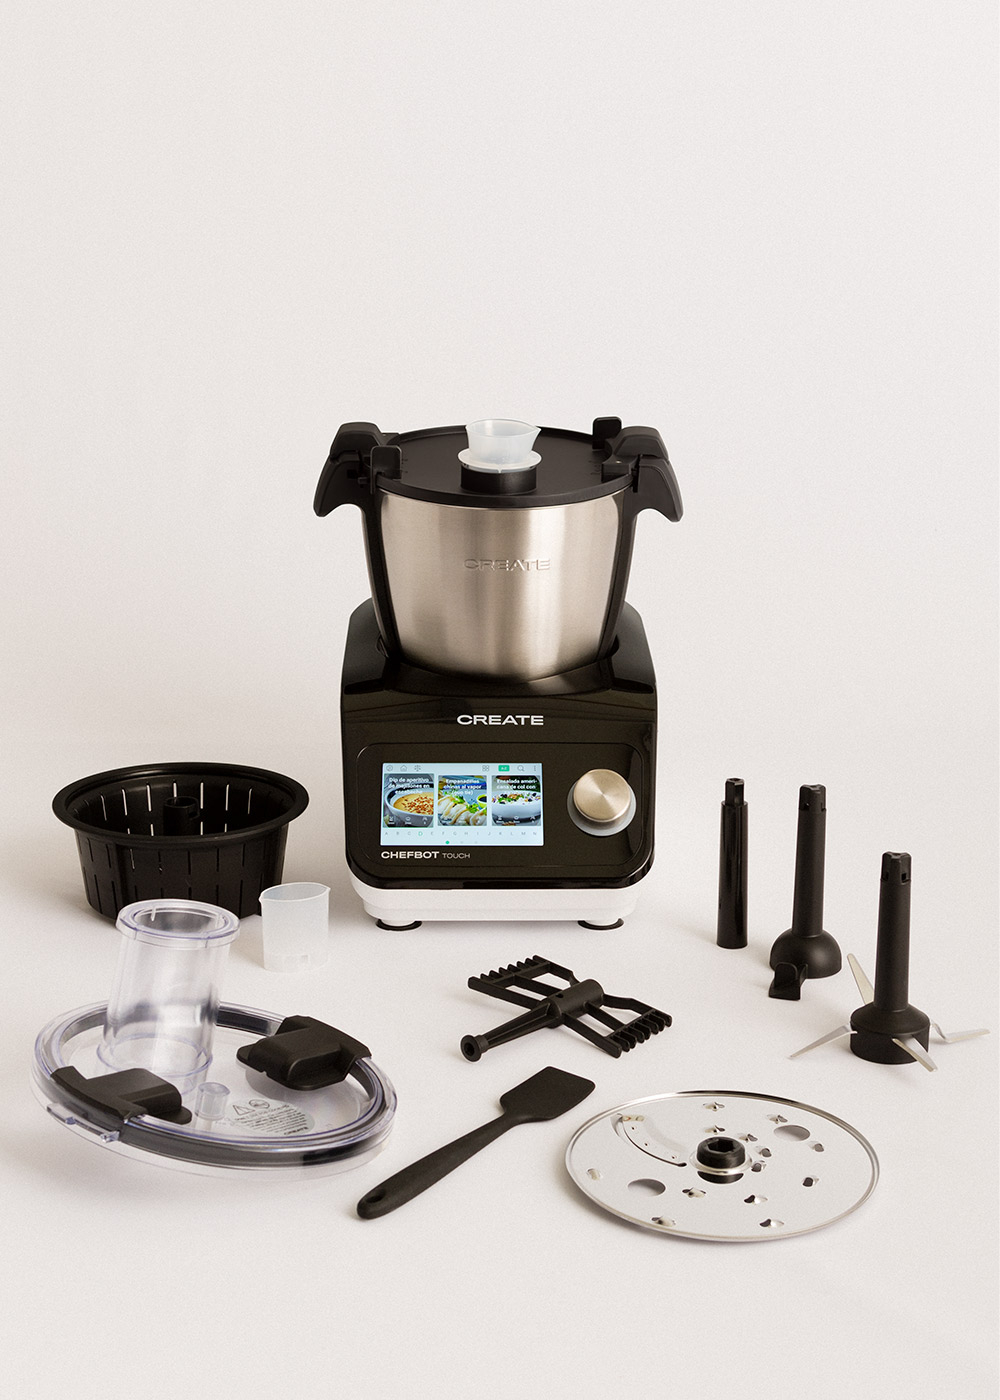 CREATE IKOHS Chefbot Touch | Robot de cocina con conexión WiFi |12  Velocidades Turbo |Accesorios incluidos |Más de 140 recetas precargadas  |Fácil de